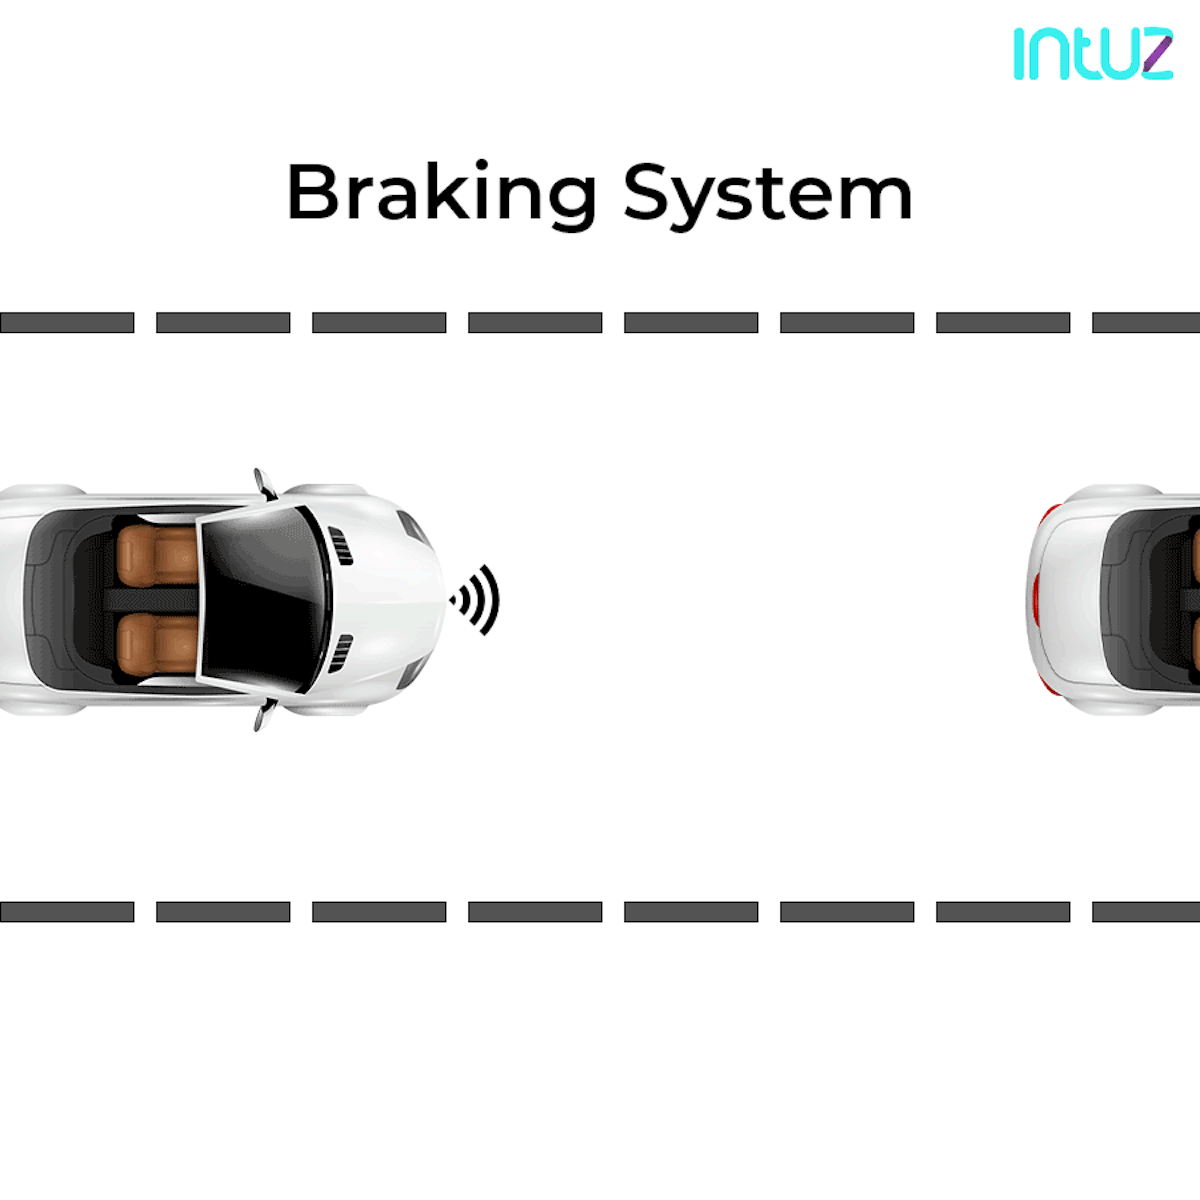 Car braking system by IoT